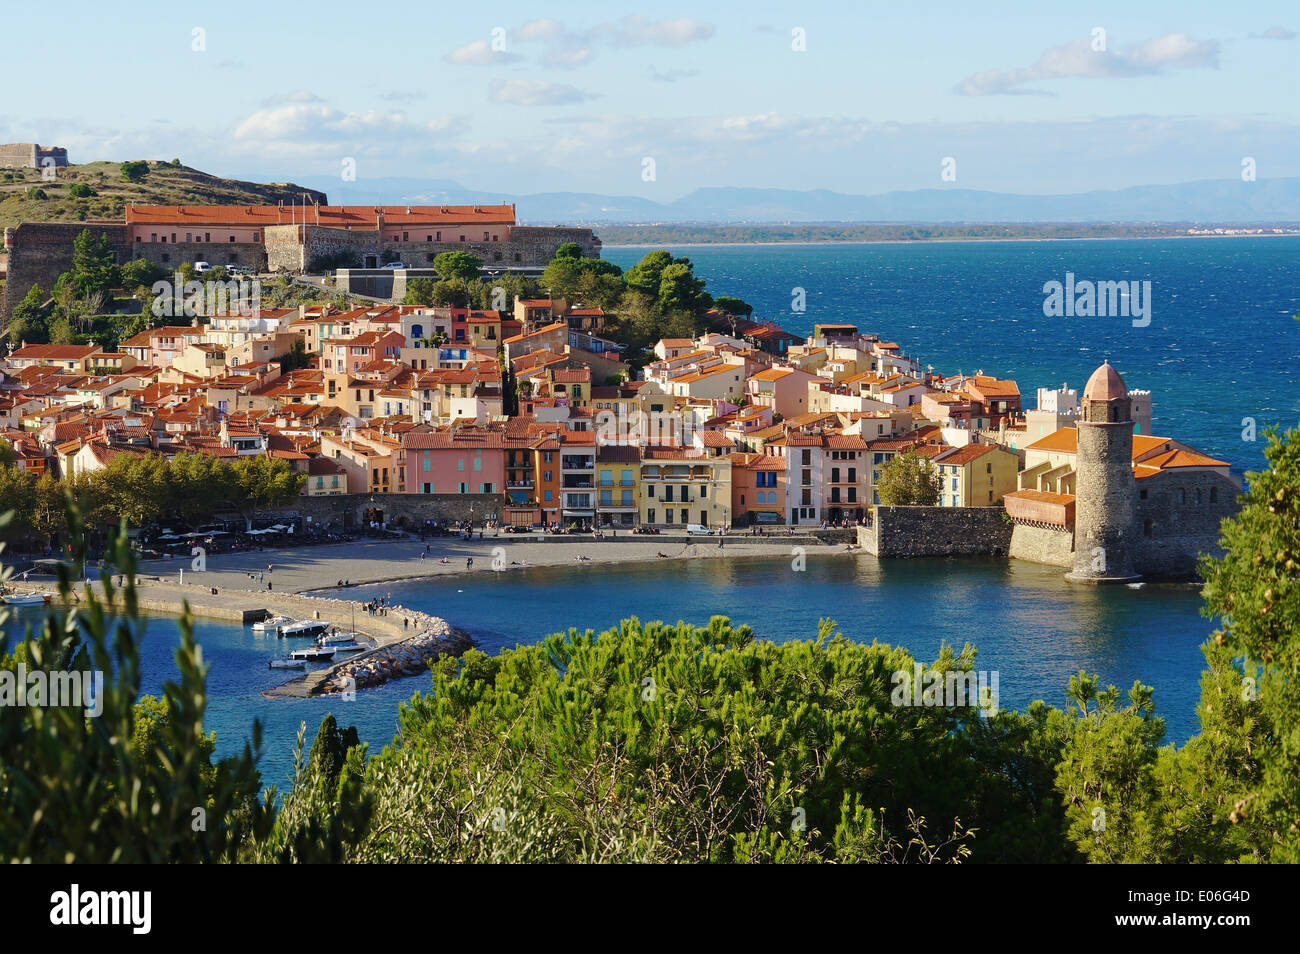 Collioure, localidad costera en el sur de Francia, el mar Mediterráneo, Languedoc Roussillon, Pirineos Orientales Foto de stock